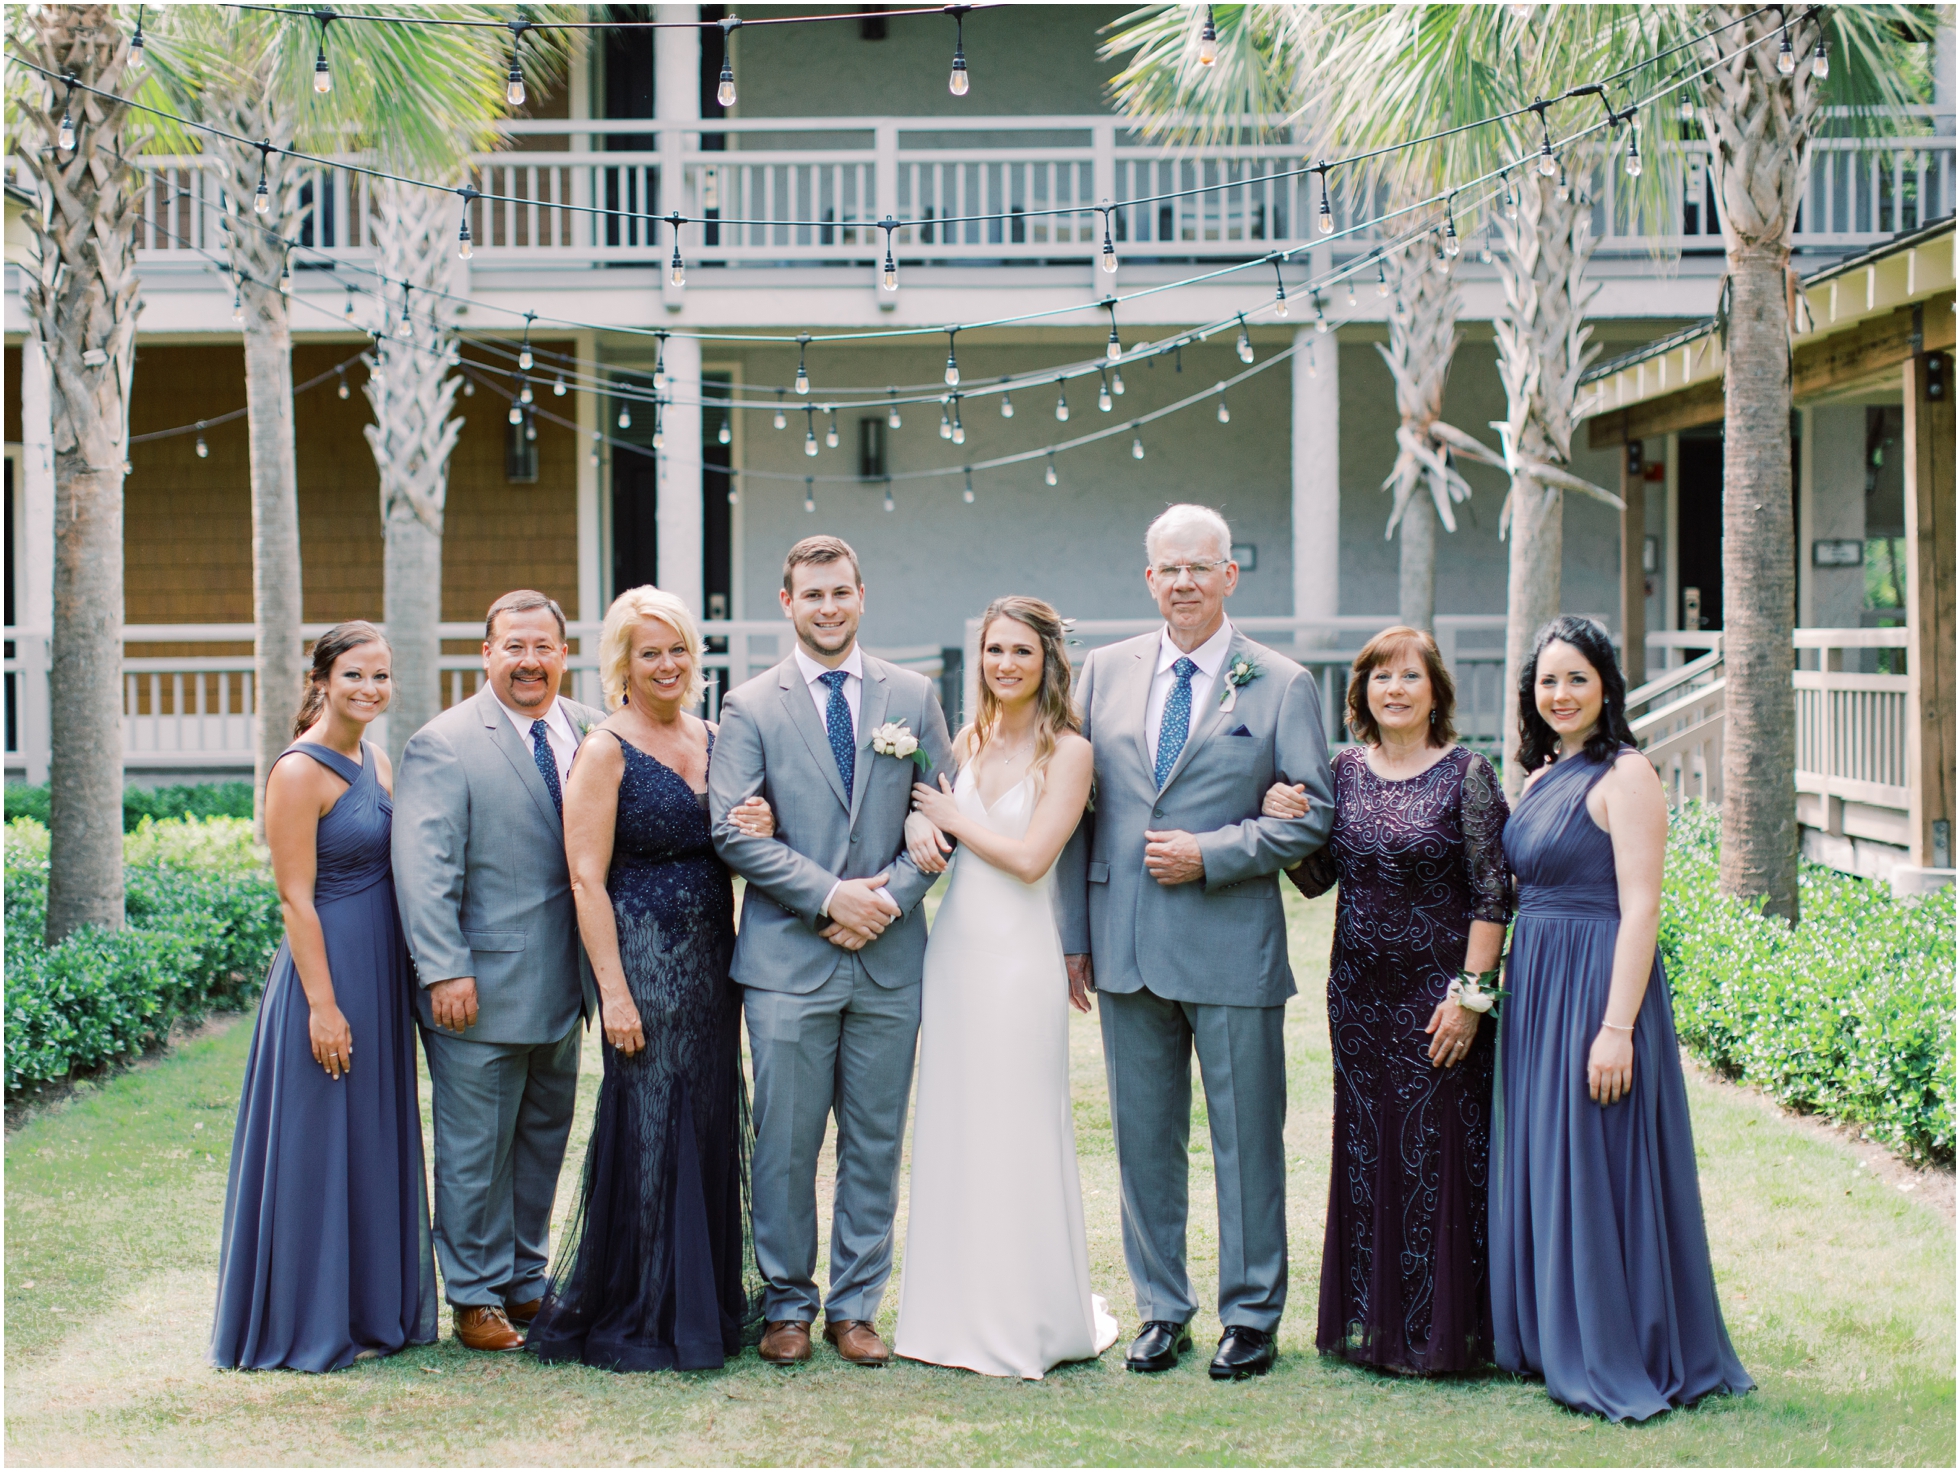 A Beachy, Breezy Hilton Head Island Wedding at the Omni